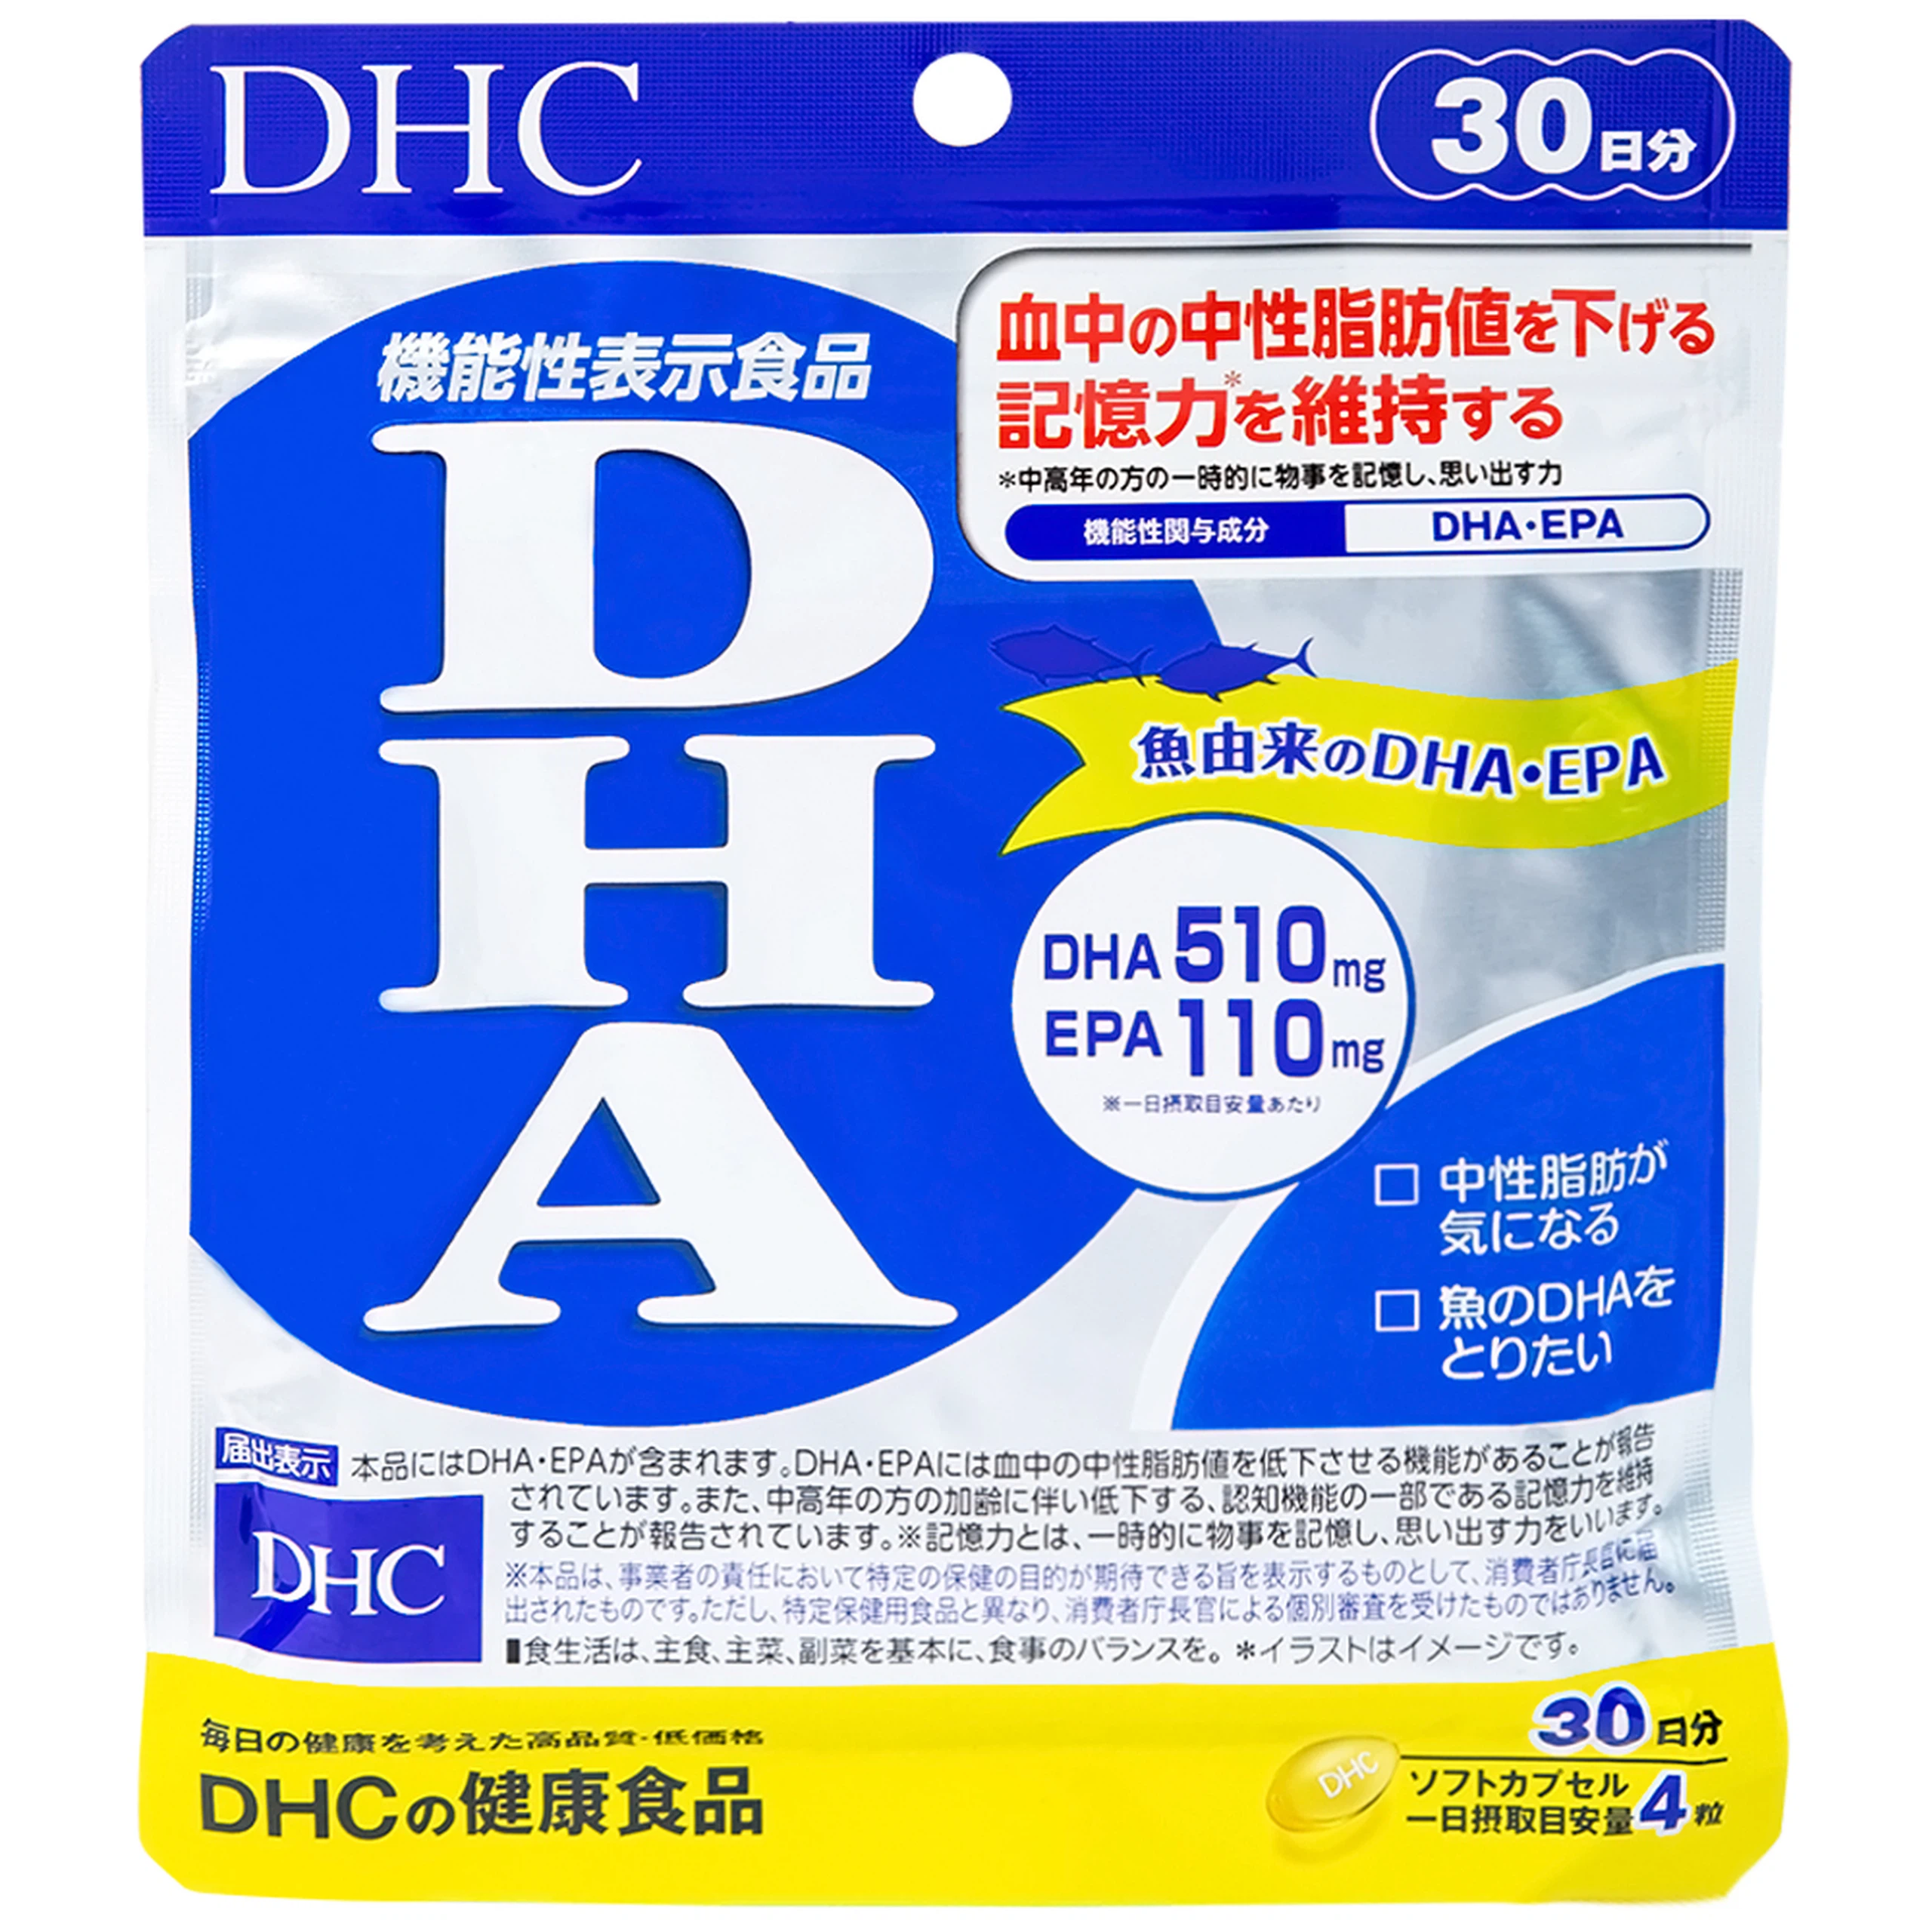 Viên uống DHC DHA bổ sung DHA, EPA, hỗ trợ giảm mỡ máu (120 viên)